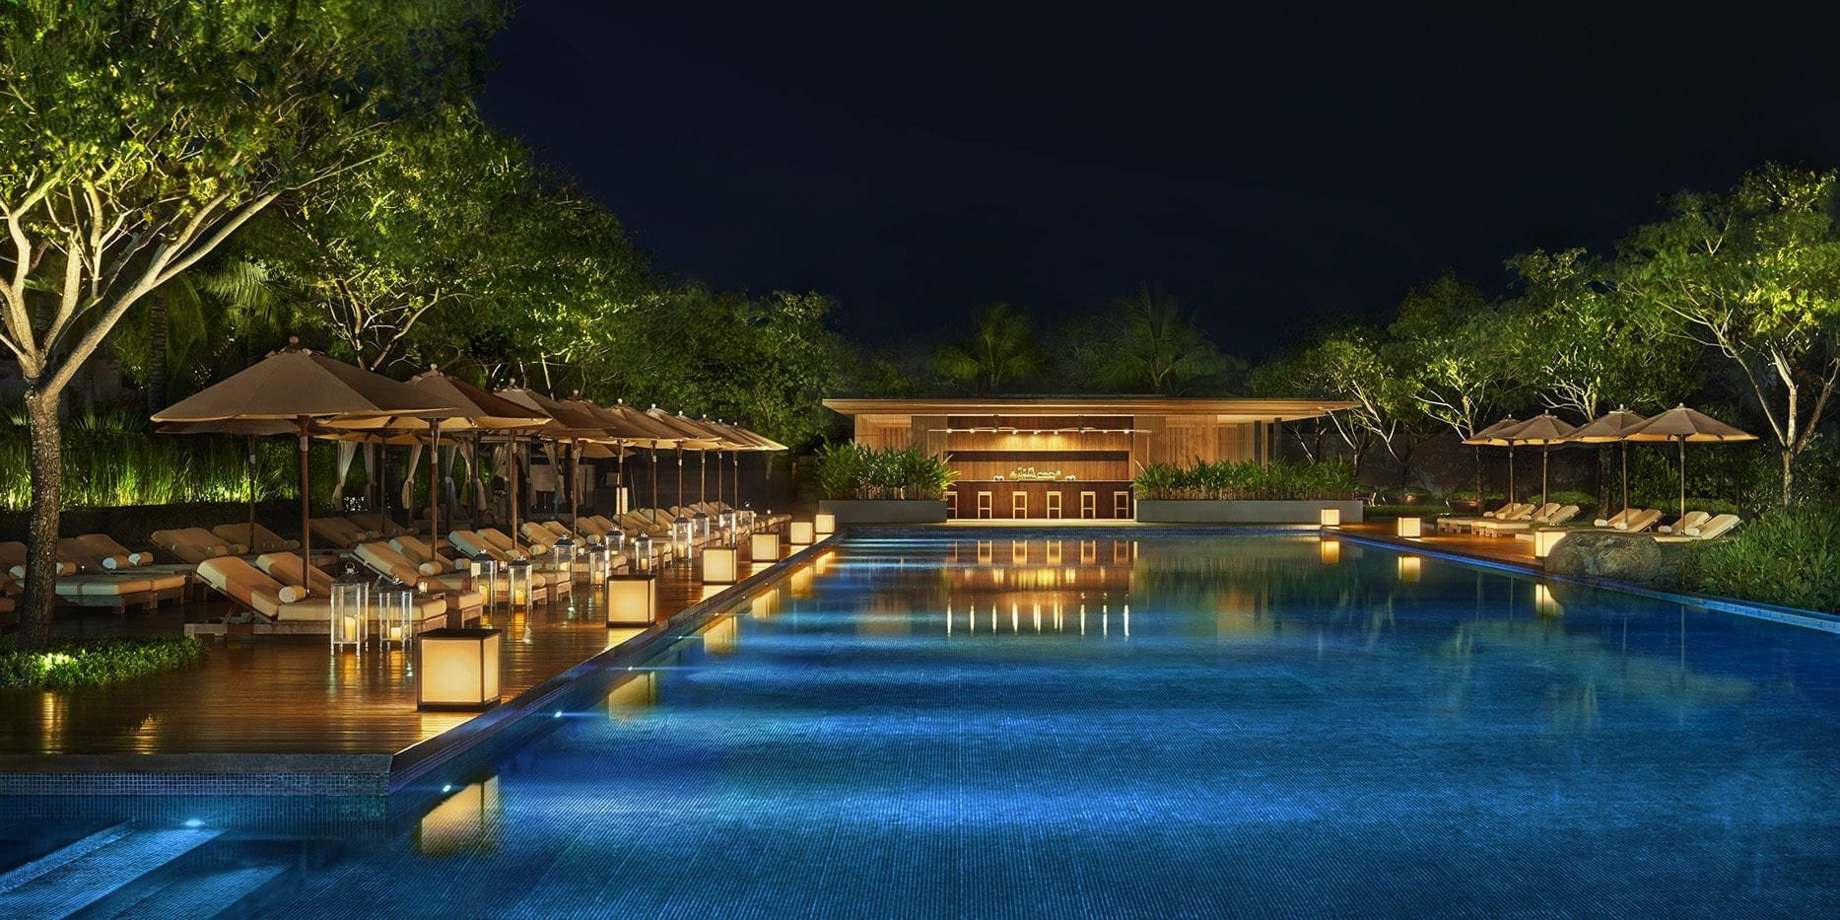 The Sanya EDITION Hotel – Sanya, Hainan, China – Standard Pool